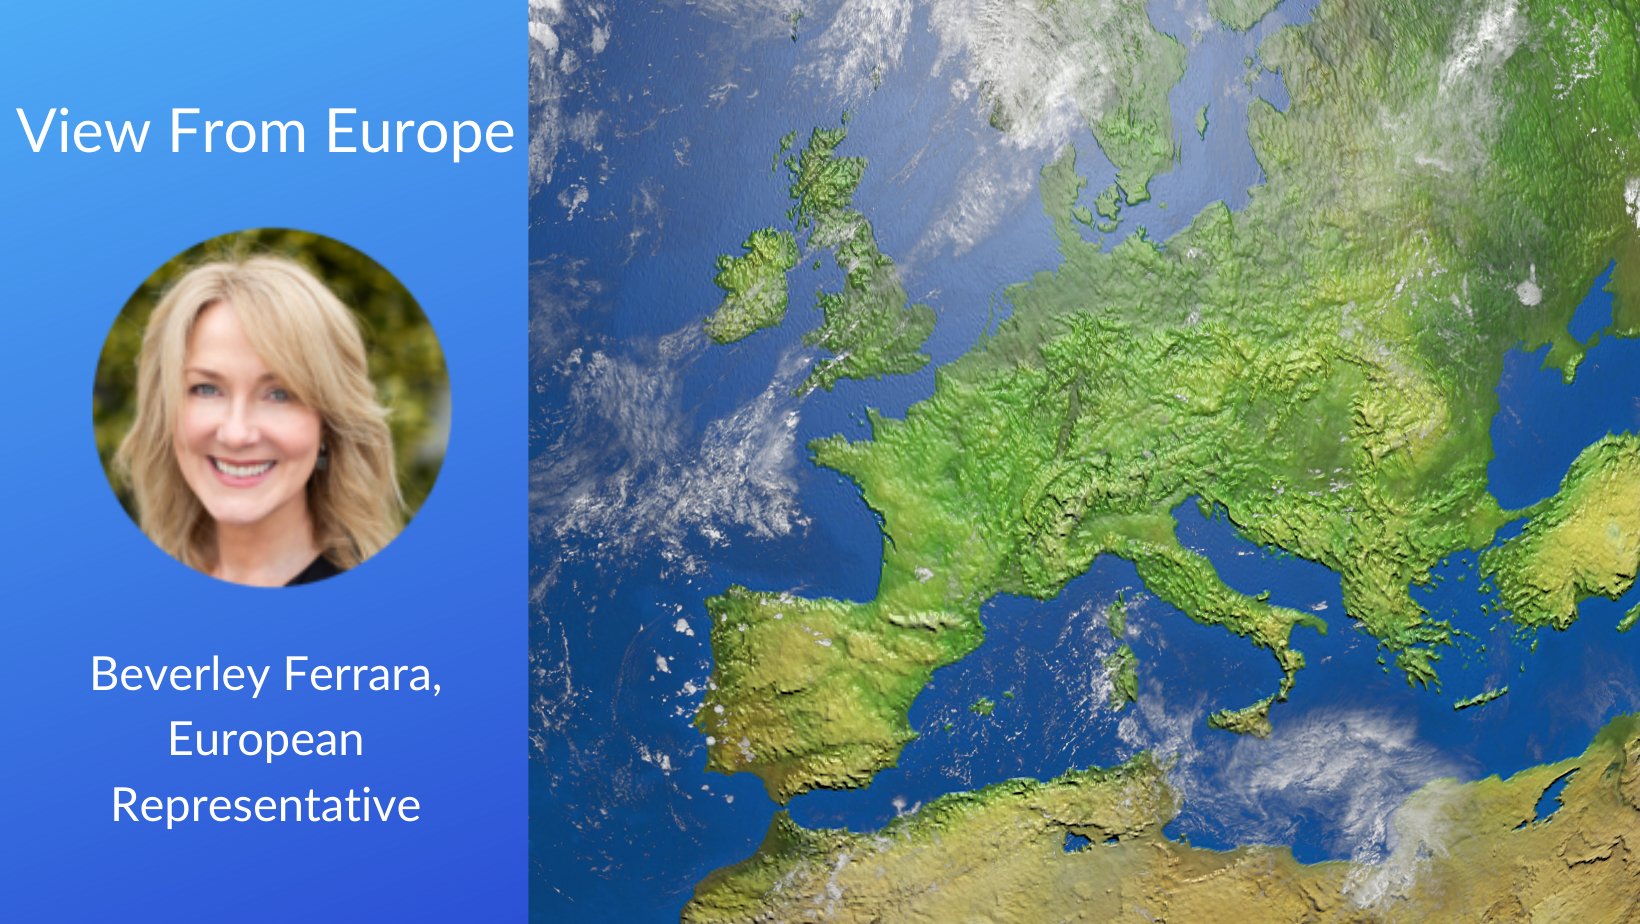 headshot of Beverley Ferrara and a map of Europe